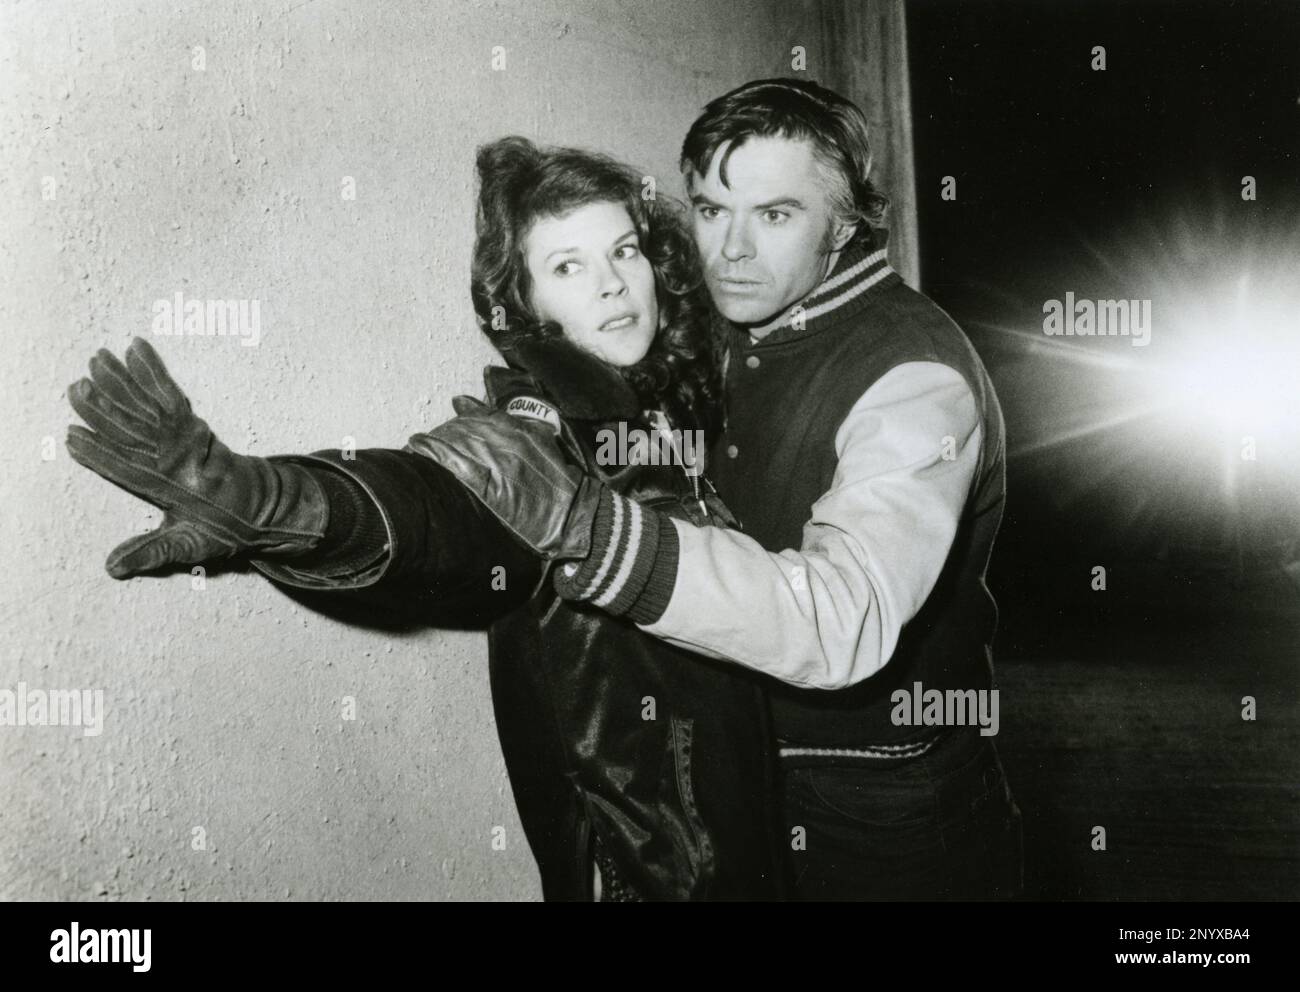 L'actrice JoBeth Williams et l'acteur Robert Urich dans le film espèces menacées, USA 1982 Banque D'Images